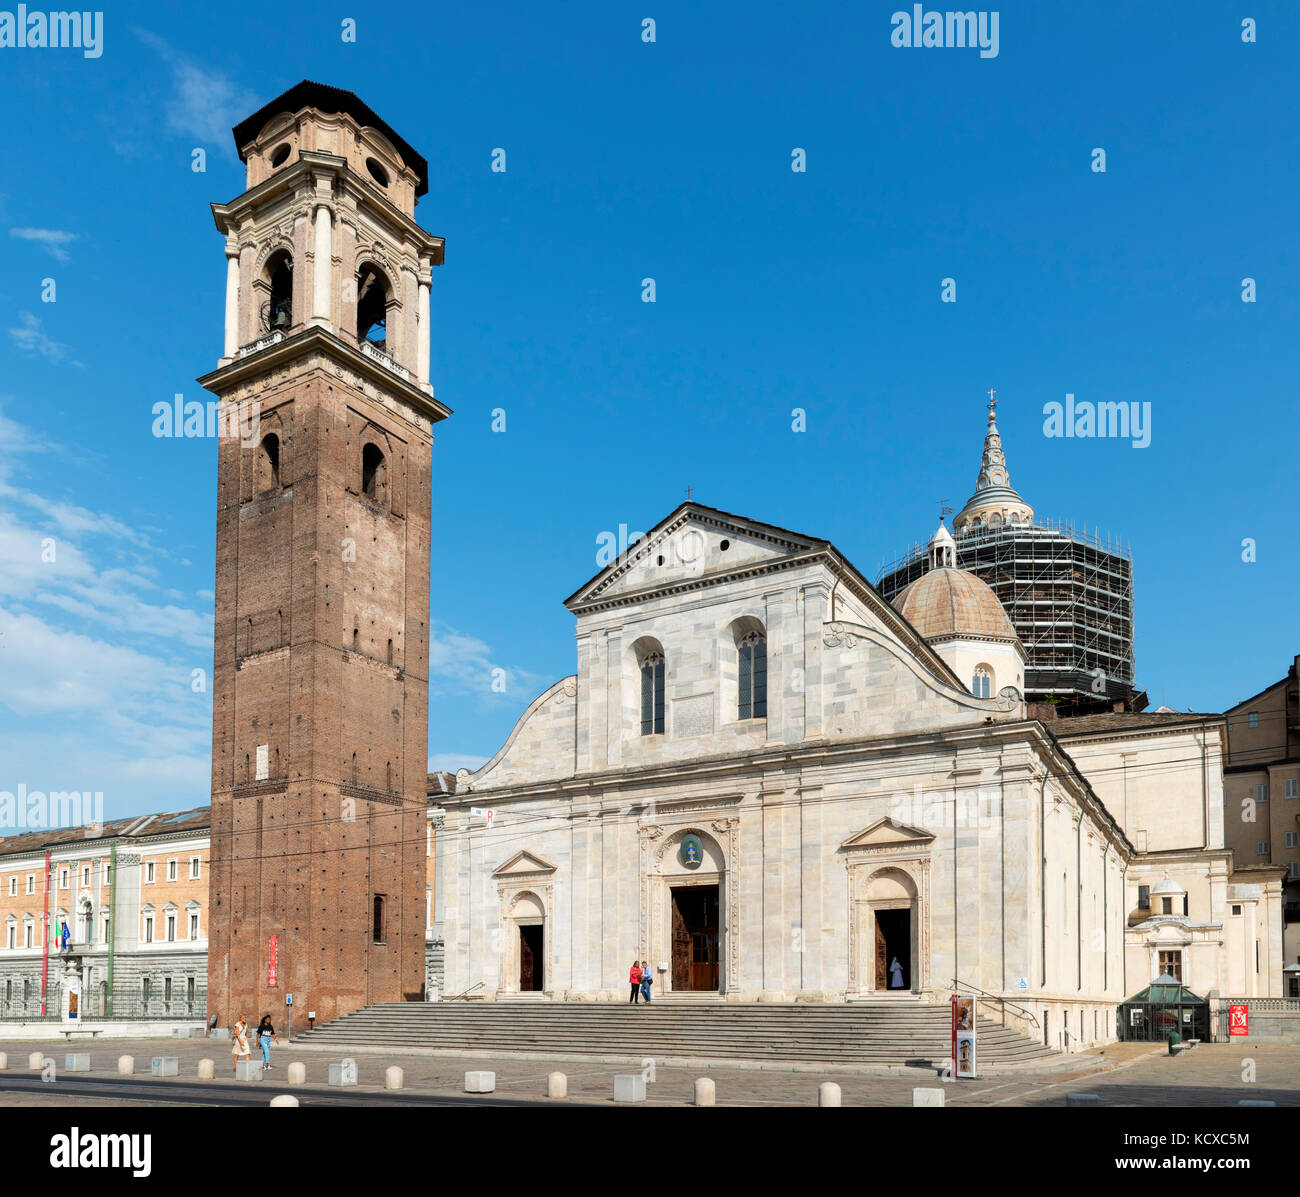 La Cathédrale de Turin (Duomo di Torino), accueil à l'Suaire de Turin, Turin, Piémont, Italie Banque D'Images